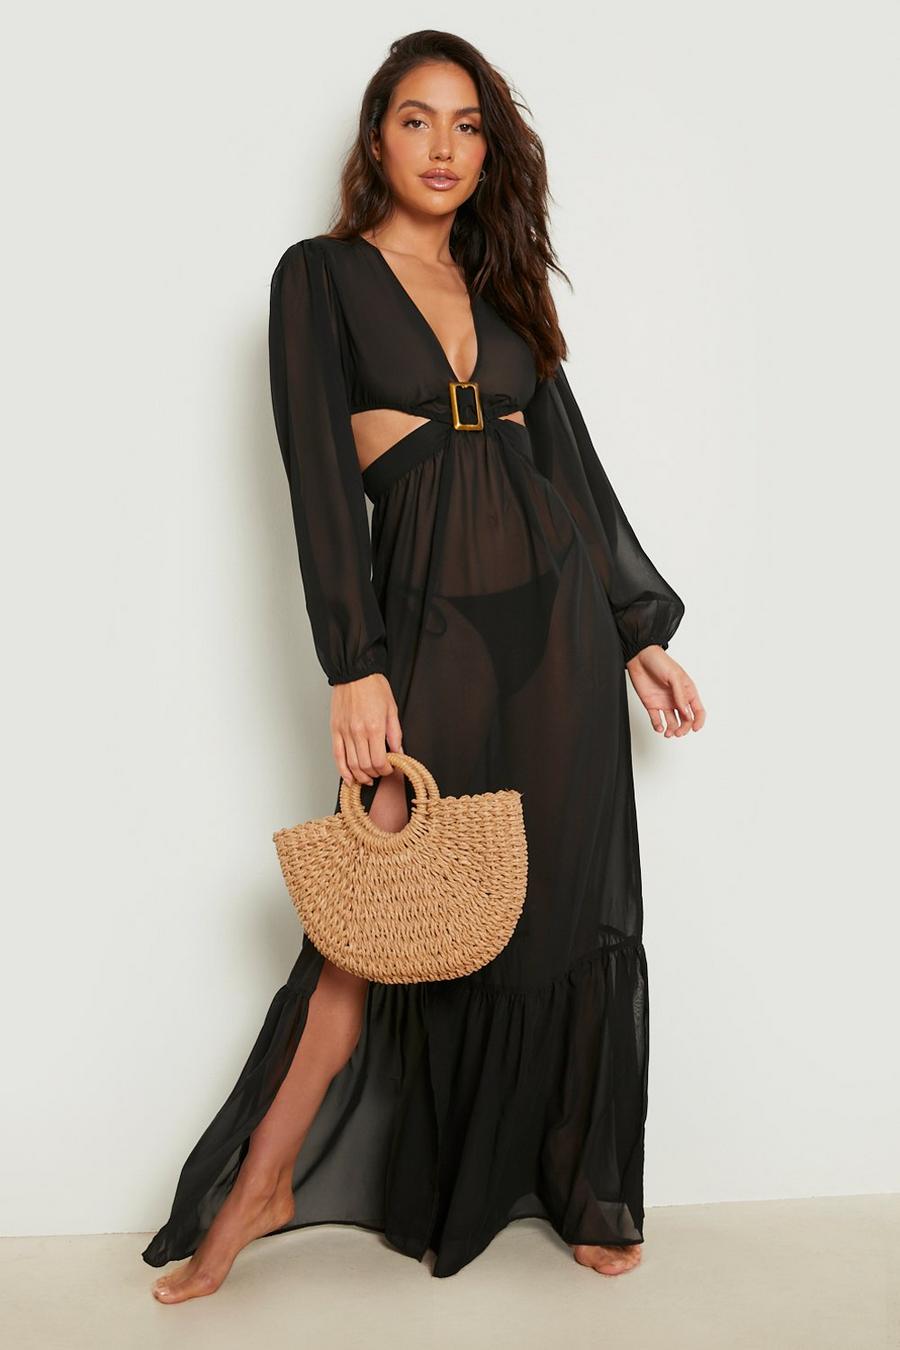 שחור black שמלת חוף מבד שיפון עם שרוולי בלון ועיטור